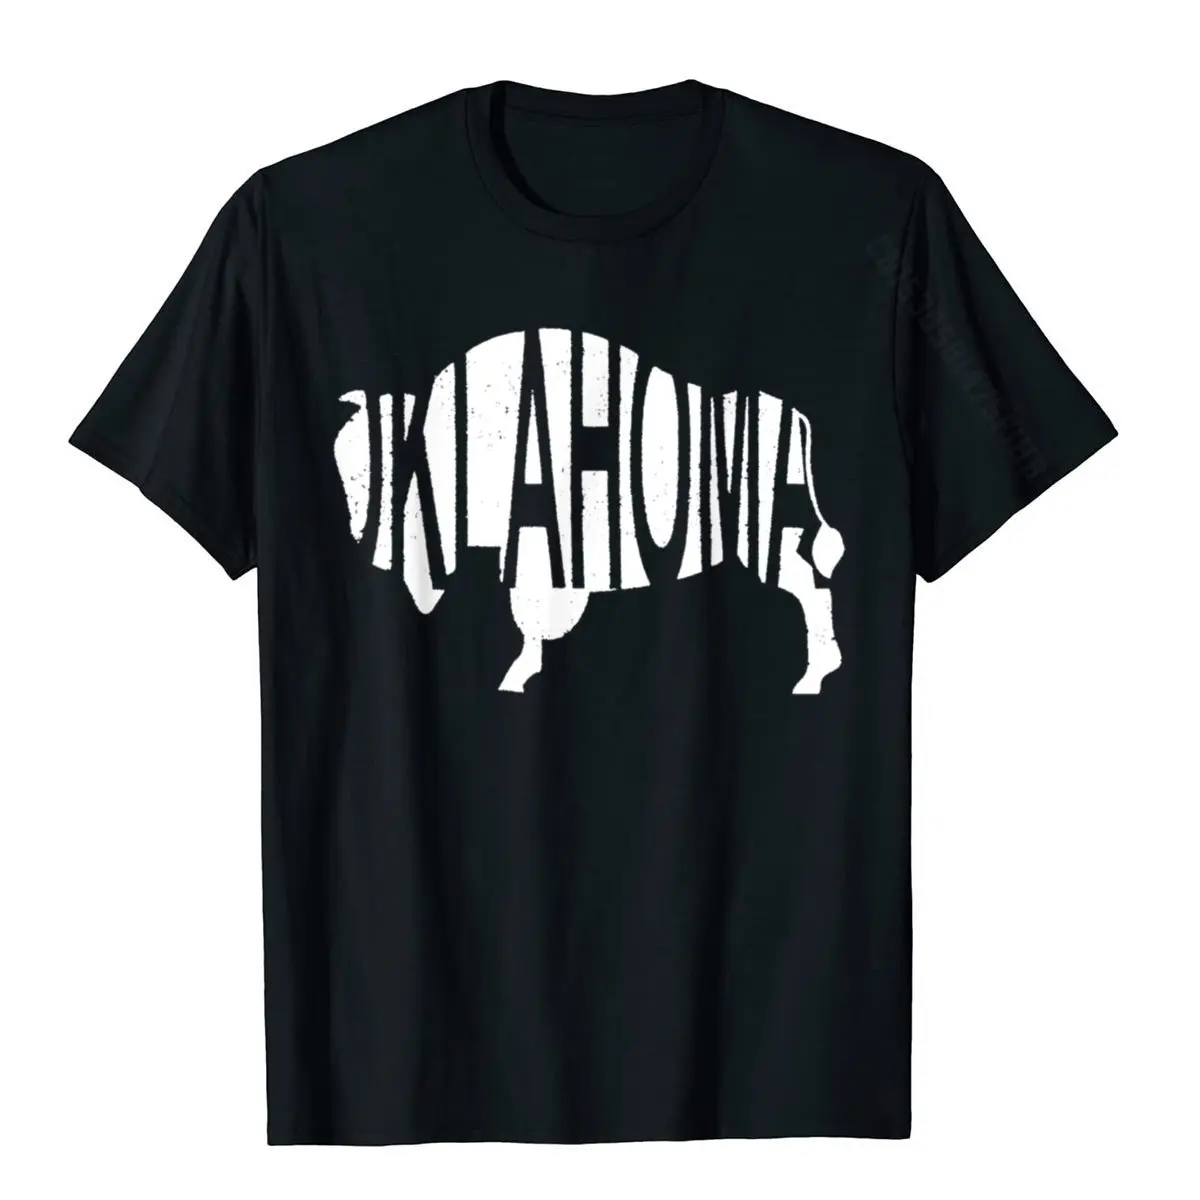 I Love Oklahoma T-Shirt Oklahoma Home Tee Oklahoma State Man Company Casual Tees Cotton T Shirts Customized